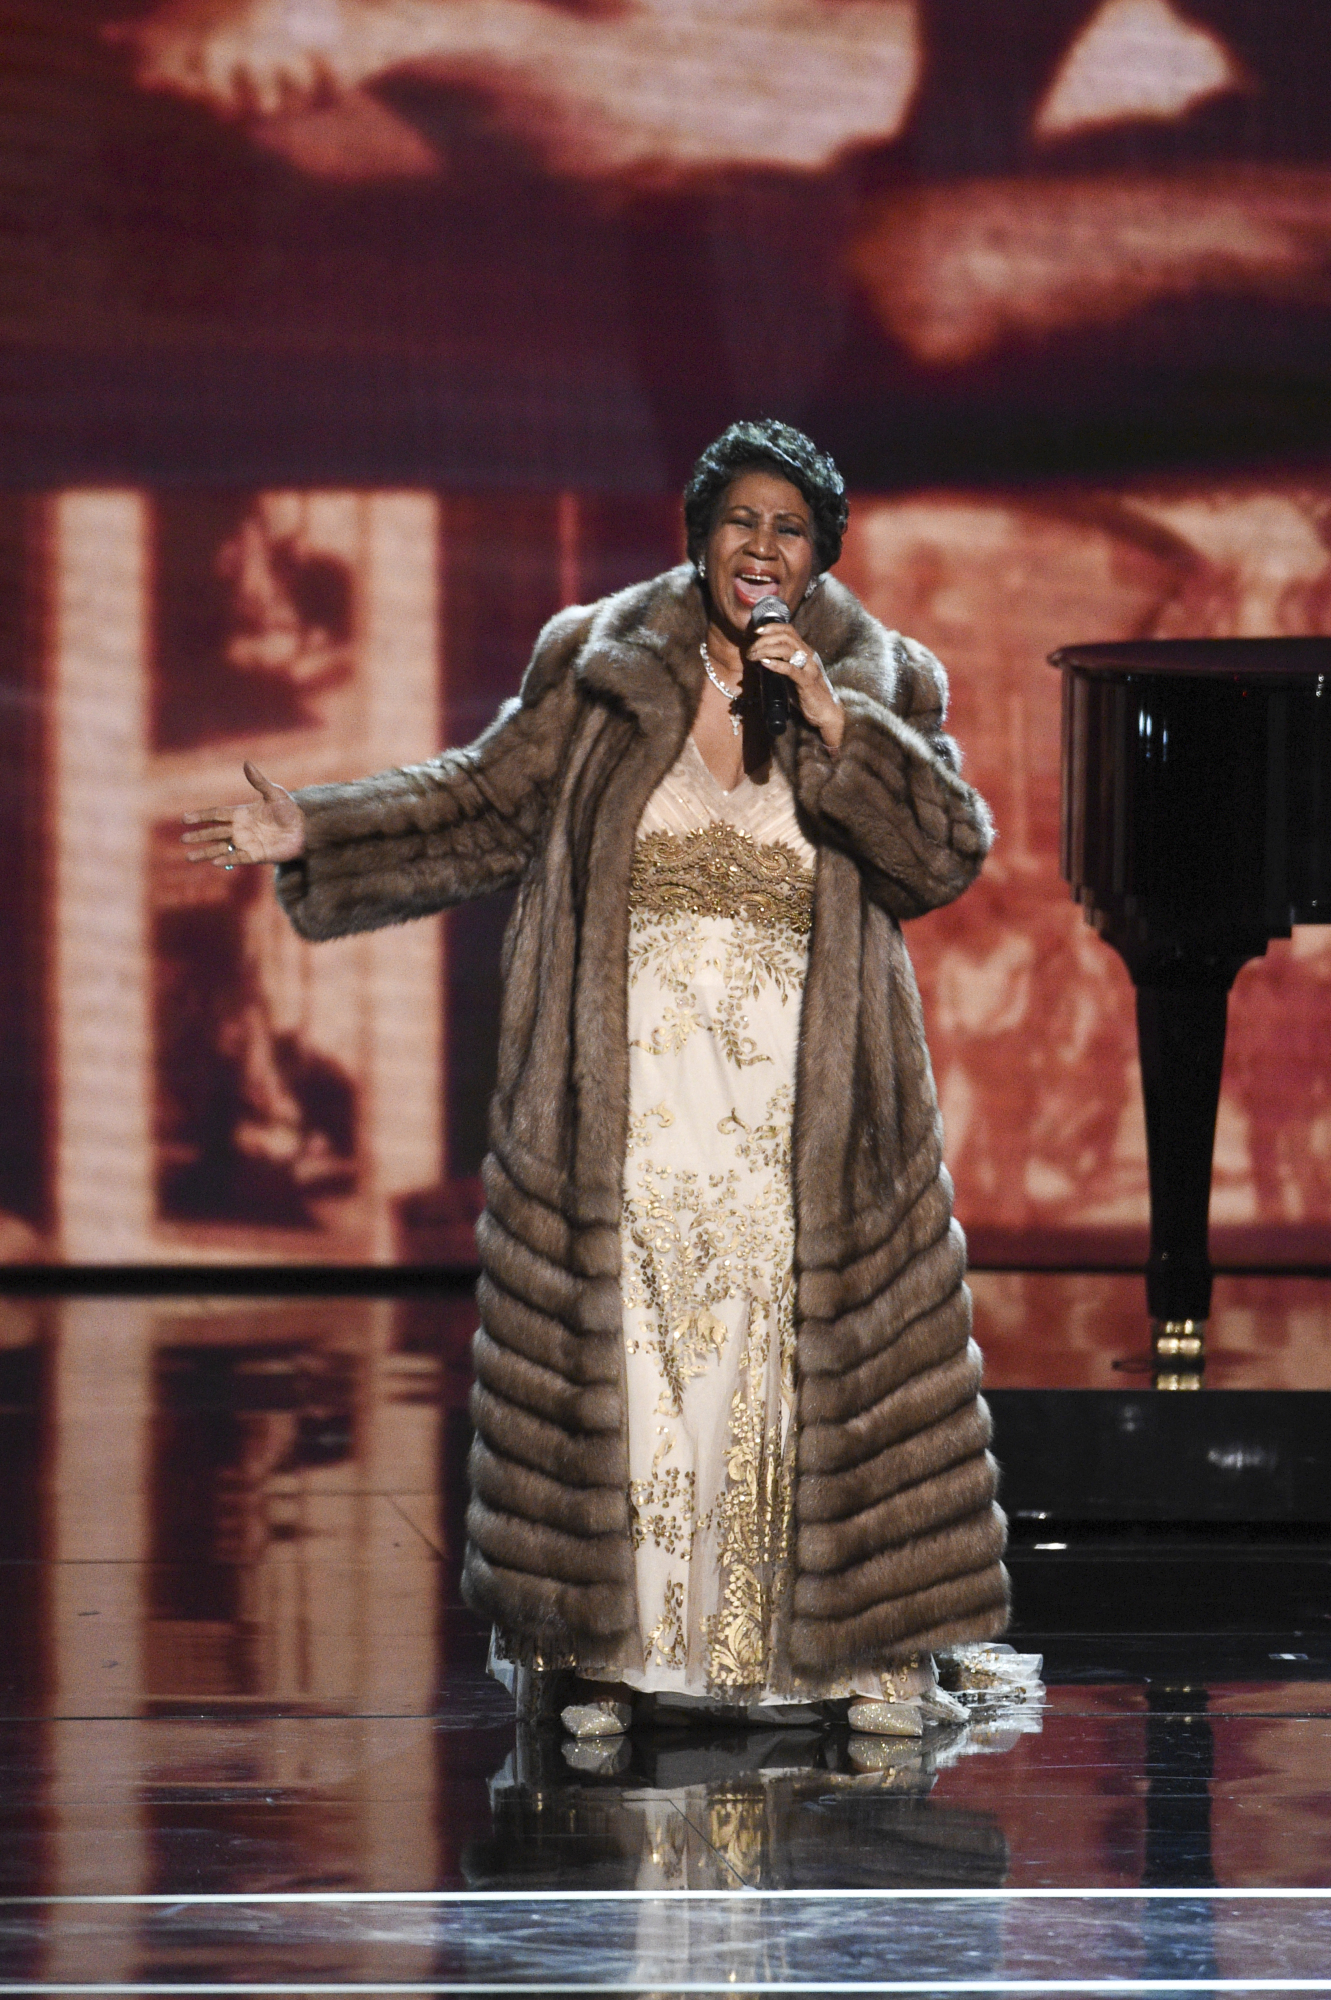 Арета Франклин на церемонии вручения наград&nbsp;Центра исполнительских искусств имени Джона Кеннеди, 6 декабря 2015, Нью-Йорк


